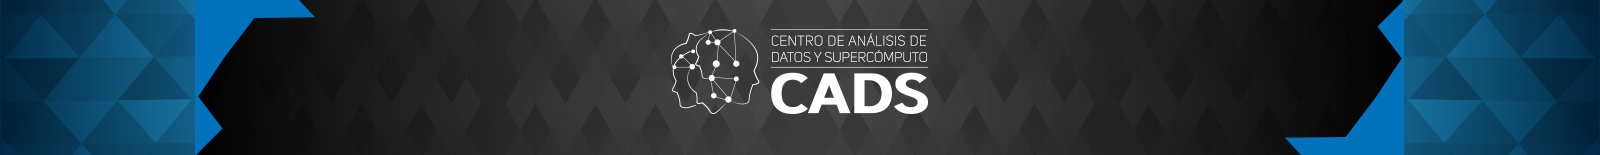 CADS Centro de análisis de datos y supercómputo